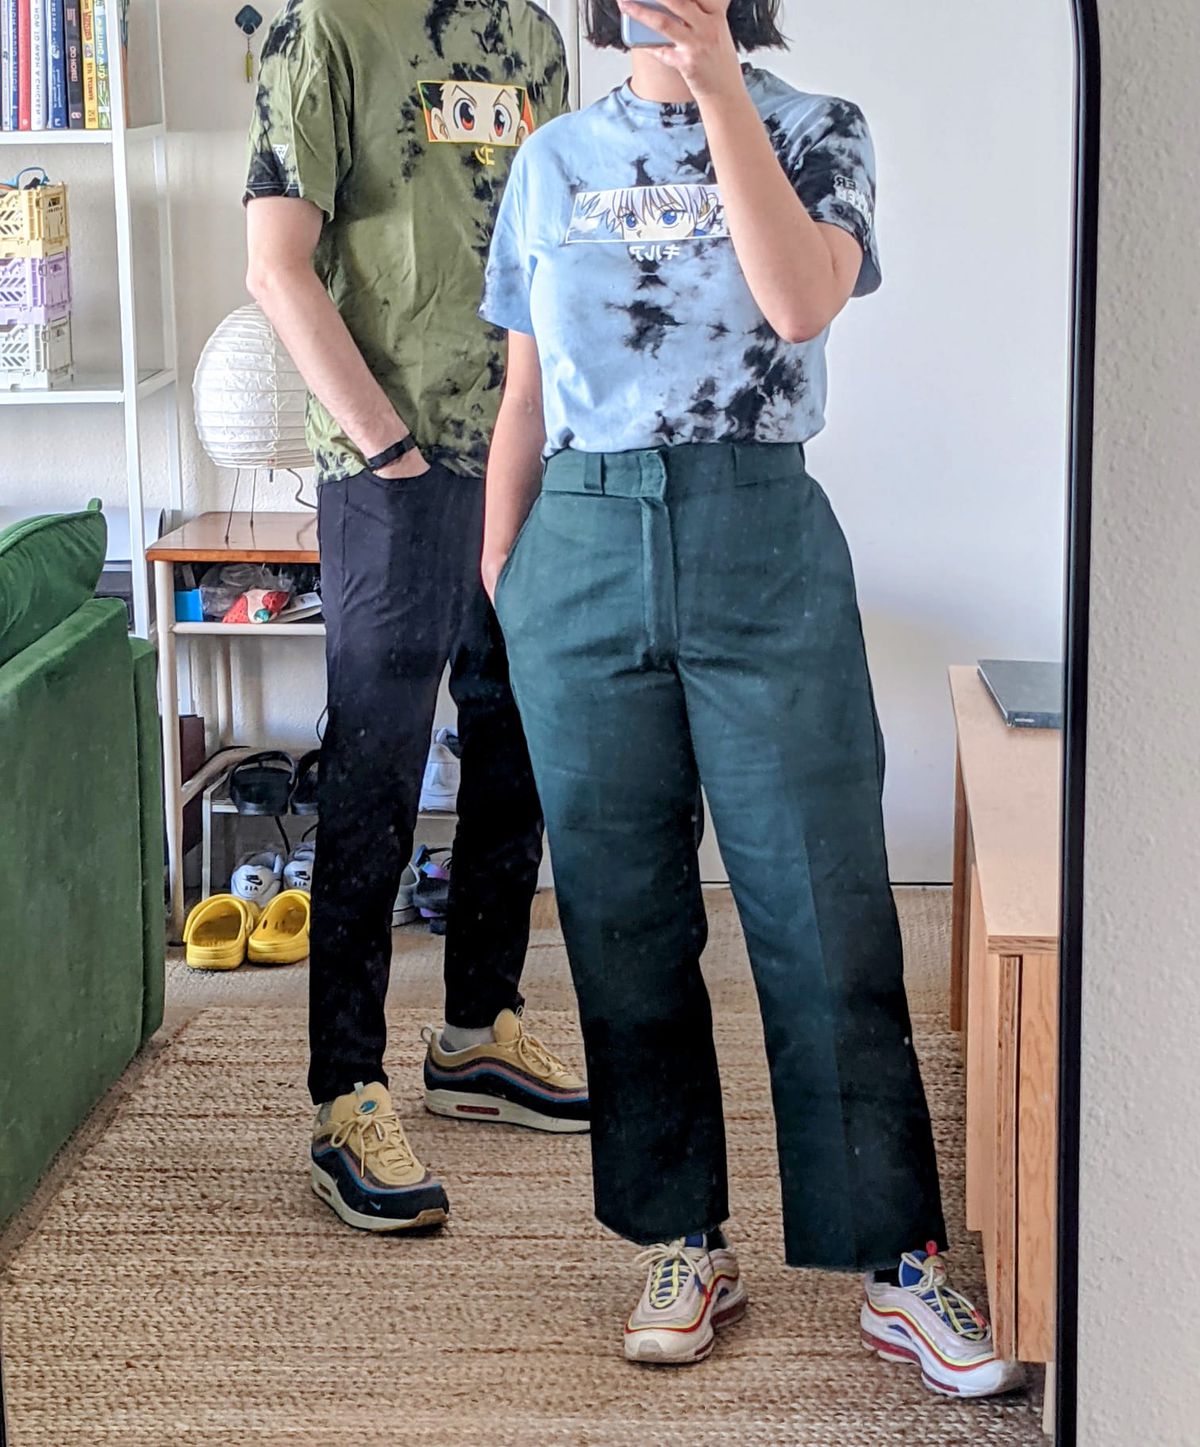 due persone in piedi che si fanno un selfie allo specchio.  uno indossa una maglietta kilua e uno indossa una maglietta gon.  sono entrambi tie-dye. 